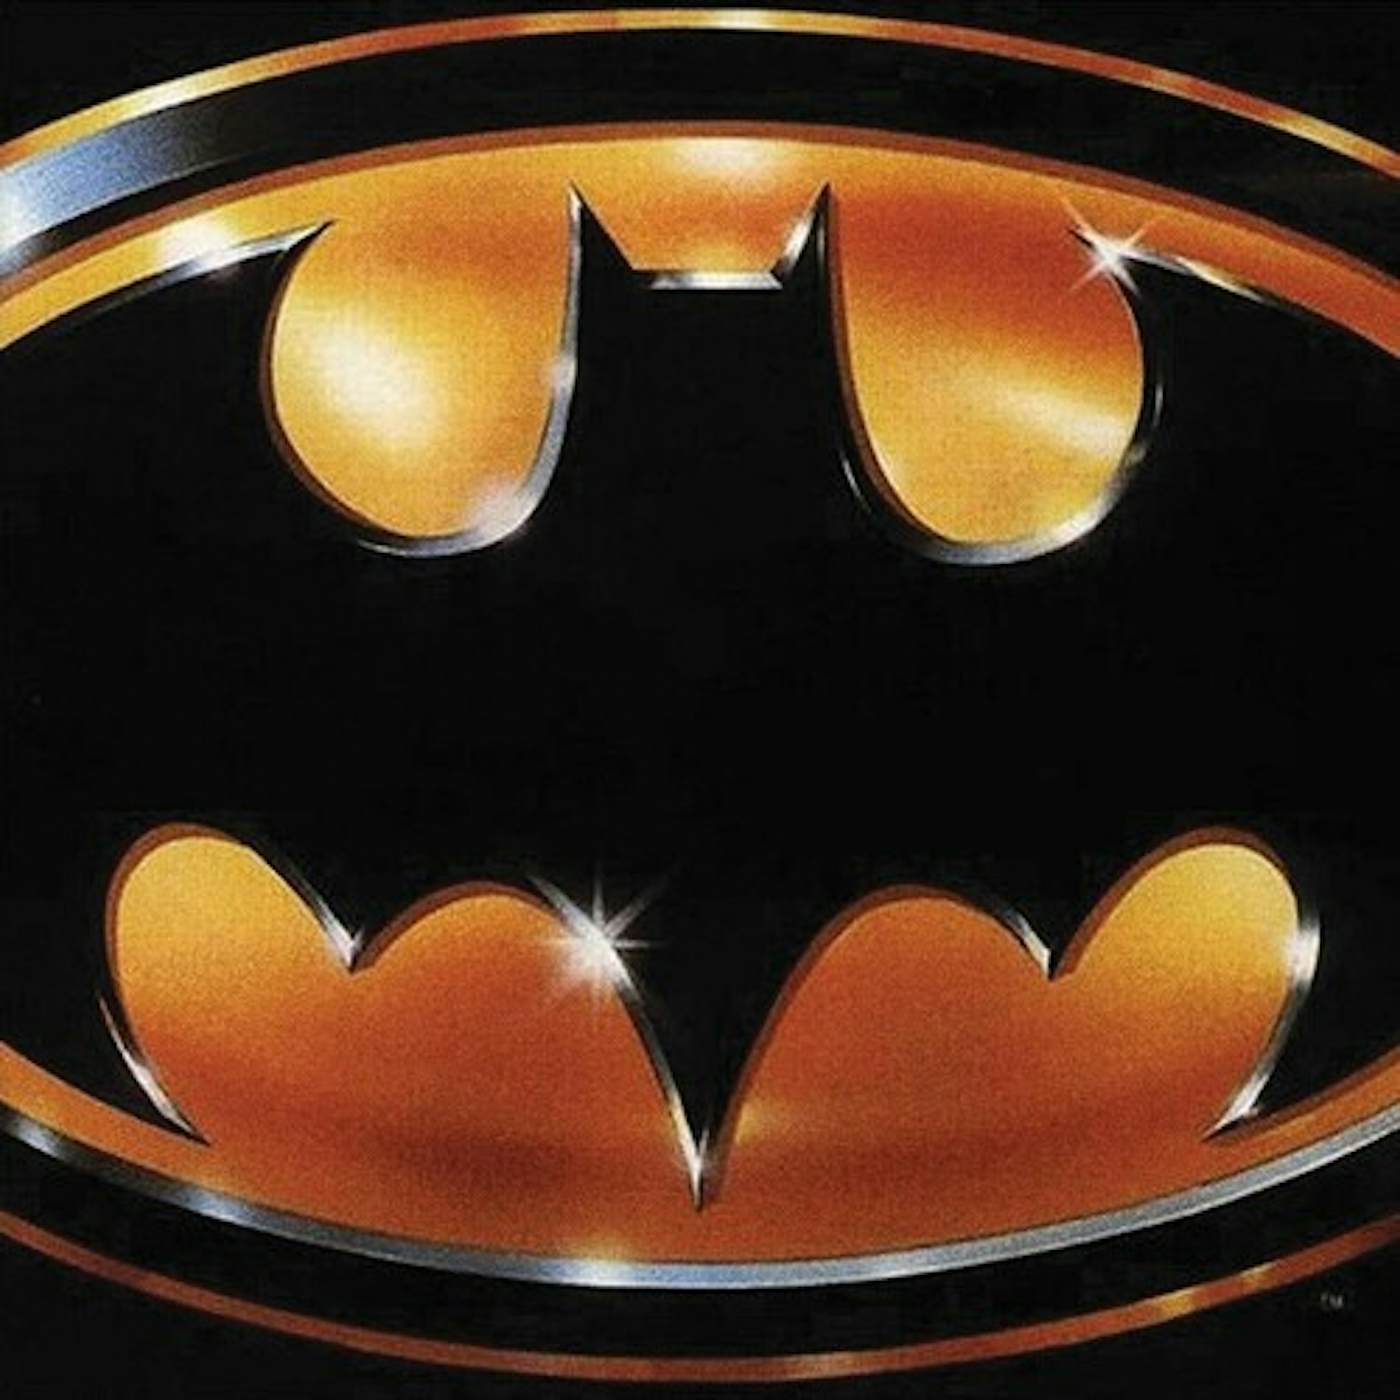 Prince Batman - Original Soundtrack Vinyl Record